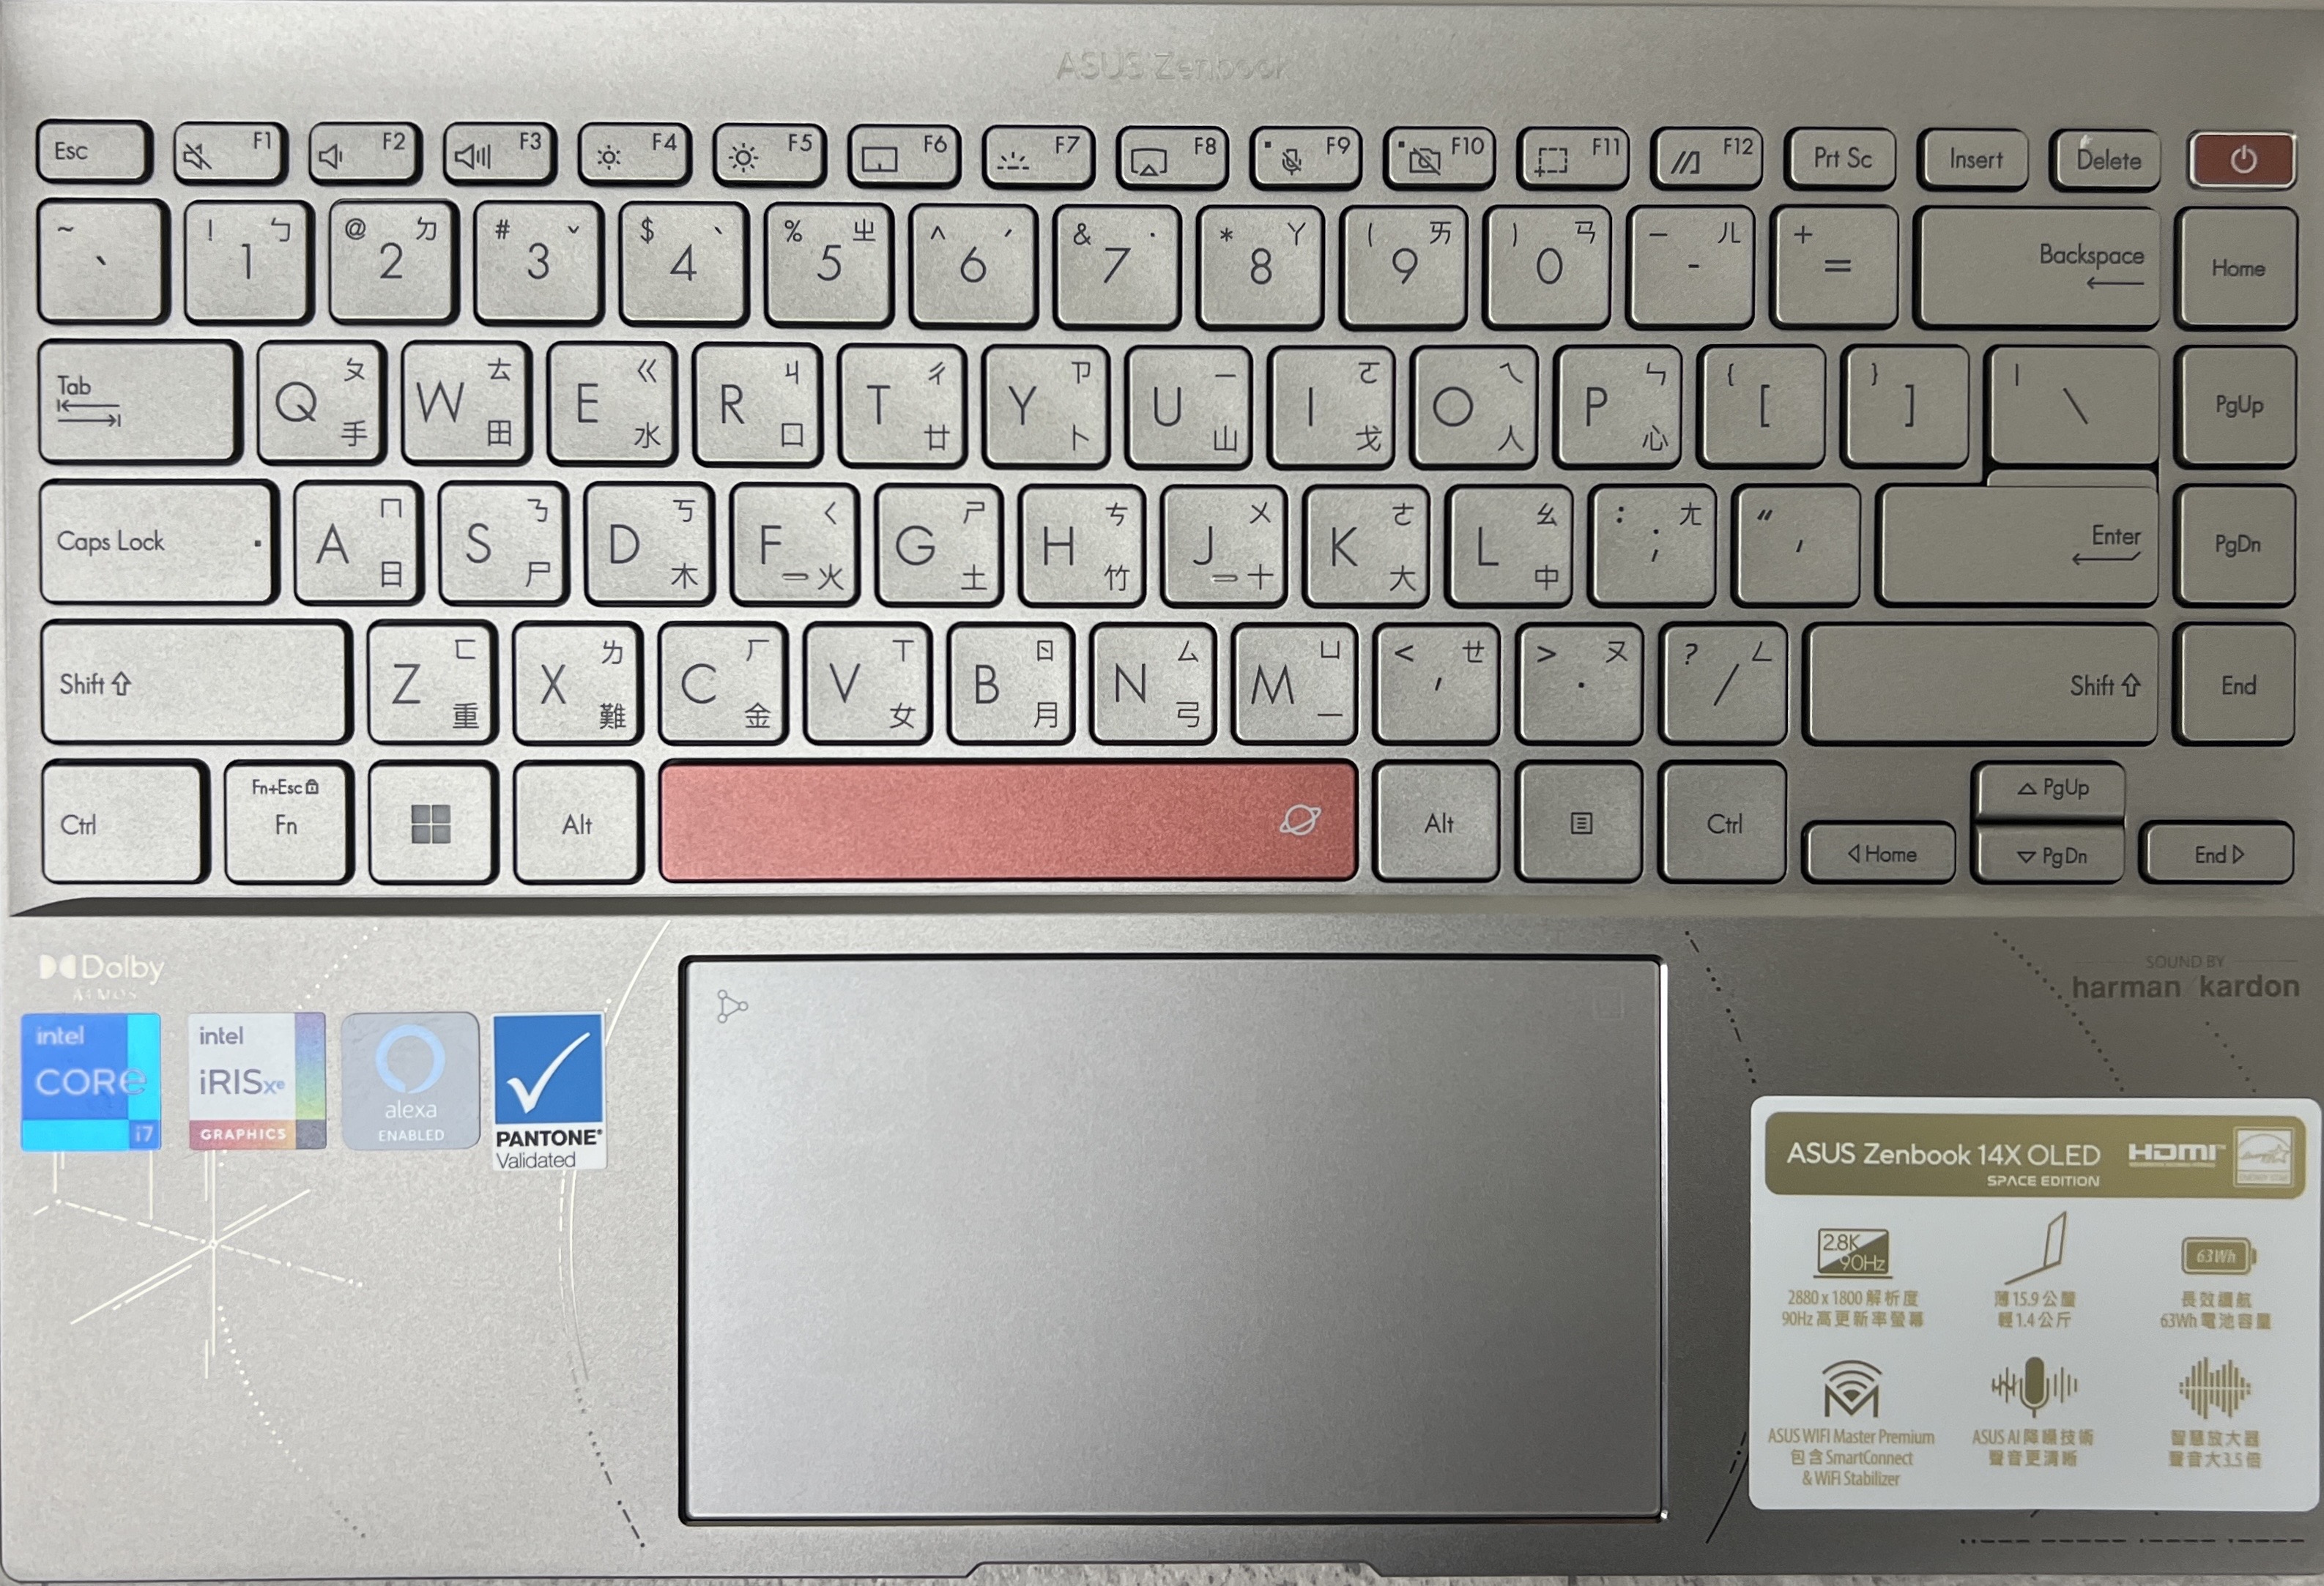 鍵盤區可見更多的符碼密碼，在手腕放置處，從左開始有 MIR 太空站型態的簡化圖紋、太空艙為概念的圓弧圖騰、代表 1998 MIR P6300 及 2011 ASUS ZENBOOK 摩斯密碼 （貼紙下方）。